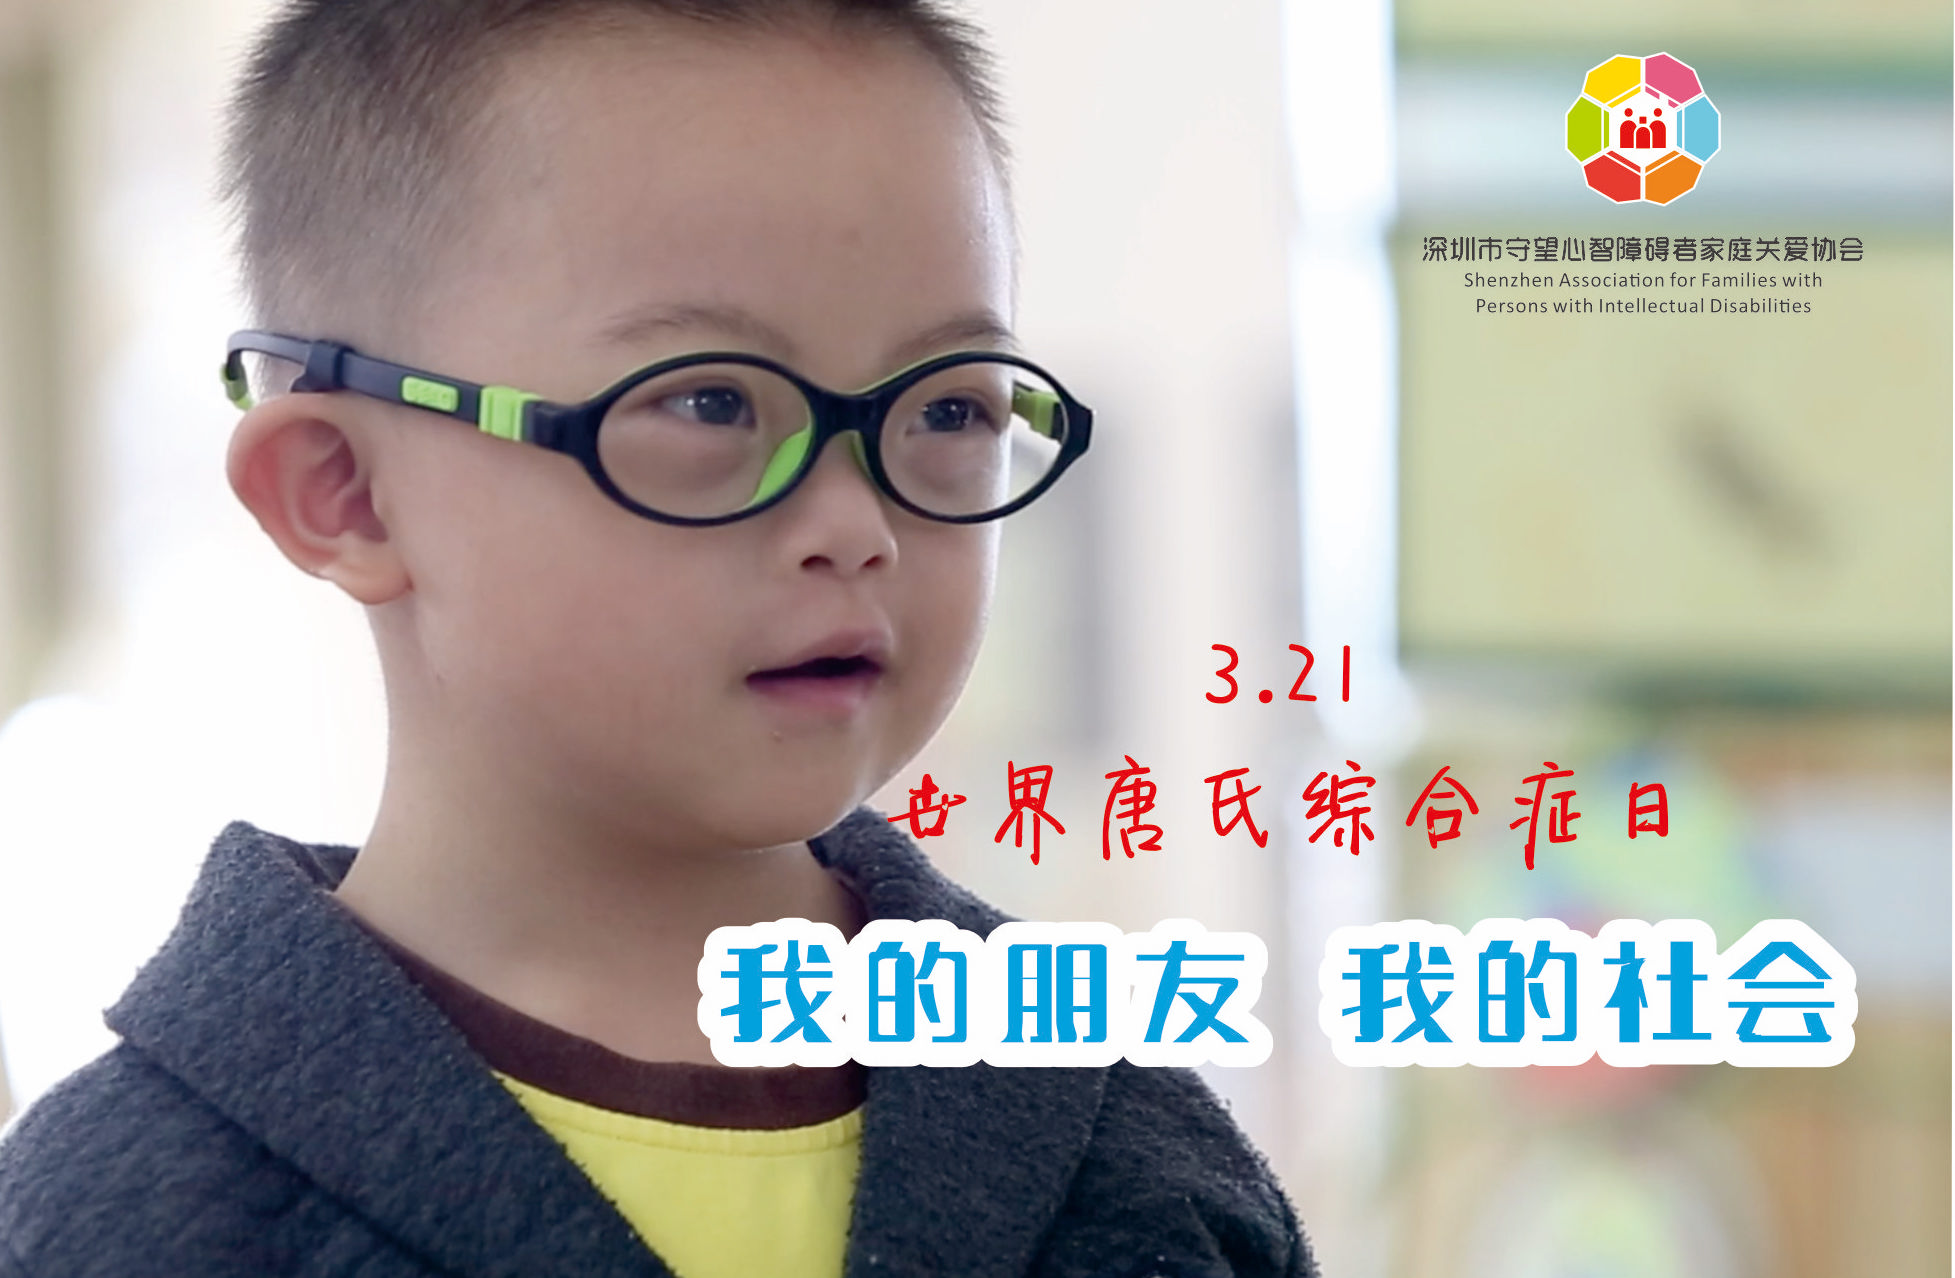 唐氏综合征的出现究竟与哪些病因有关呢？北京天使儿童医院 - 哔哩哔哩